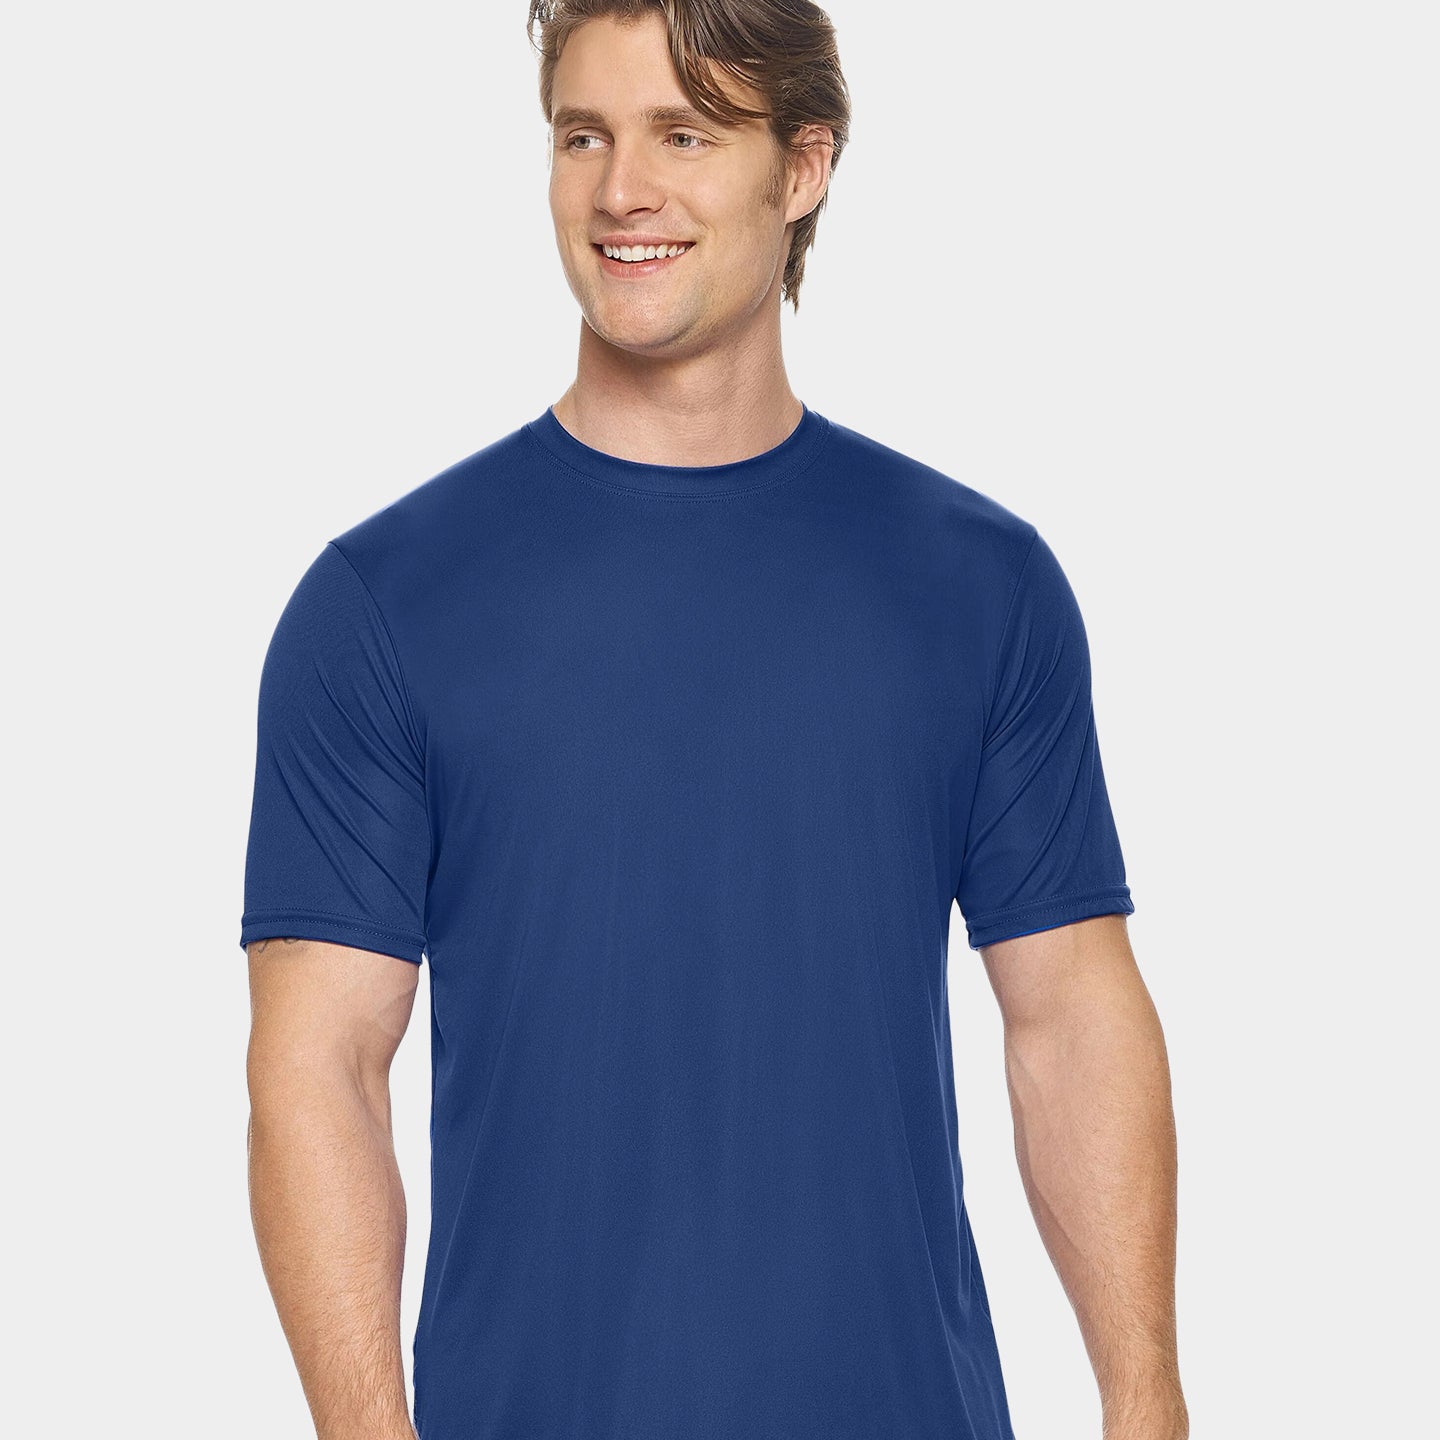 Expert Brand DriMax Men's Performance Crewneck T-Shirt, 4XL, Navy A1